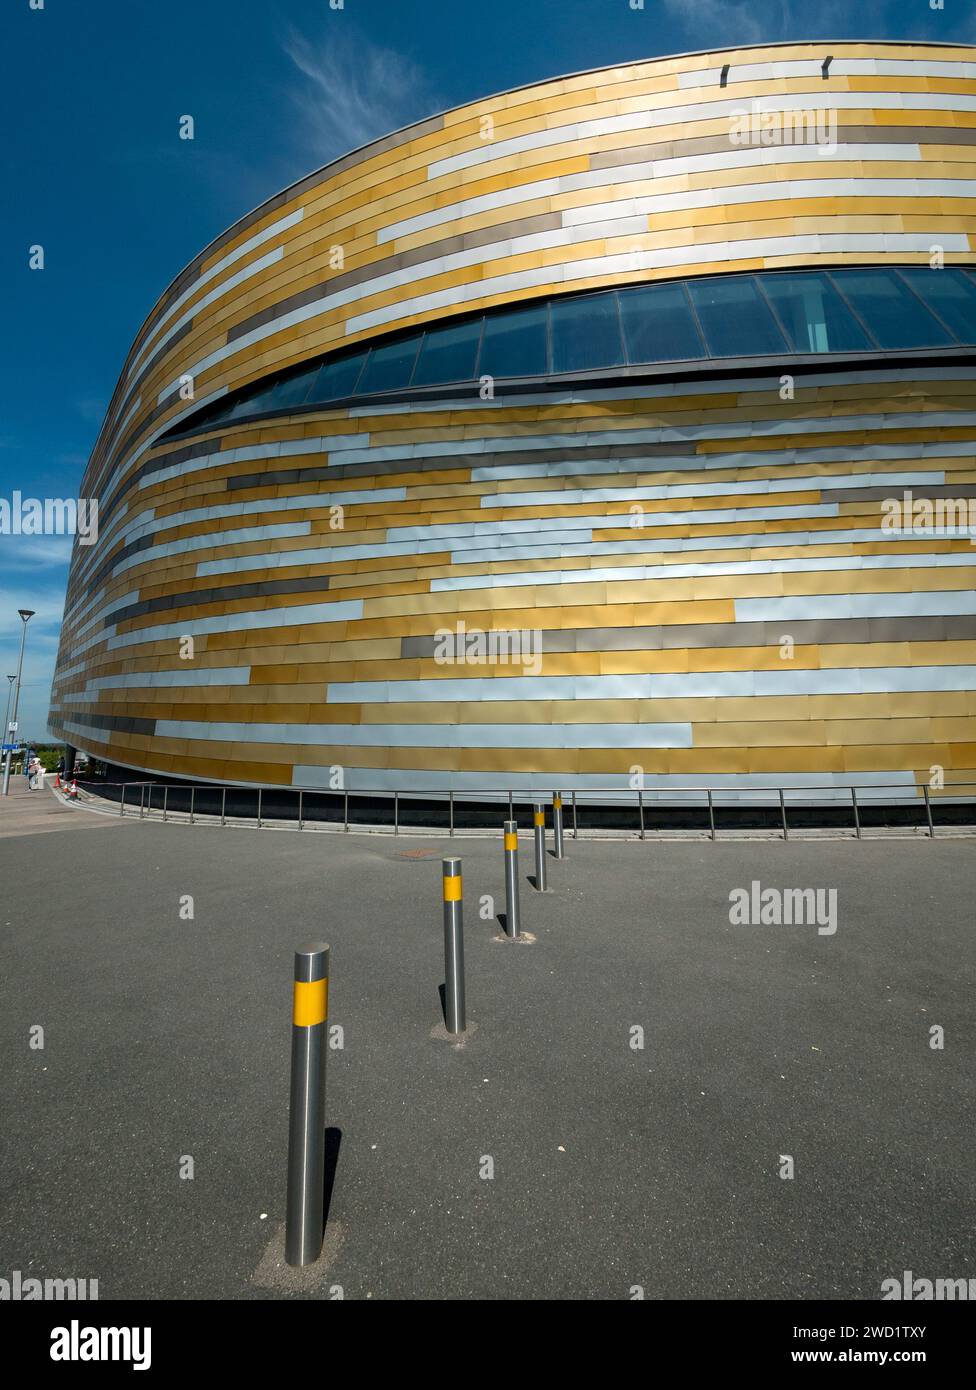 Farbenfrohe Verkleidung und moderne Architektur der Derby Arena / Velodrome vor blauem Himmel, Derby, England, Großbritannien Stockfoto